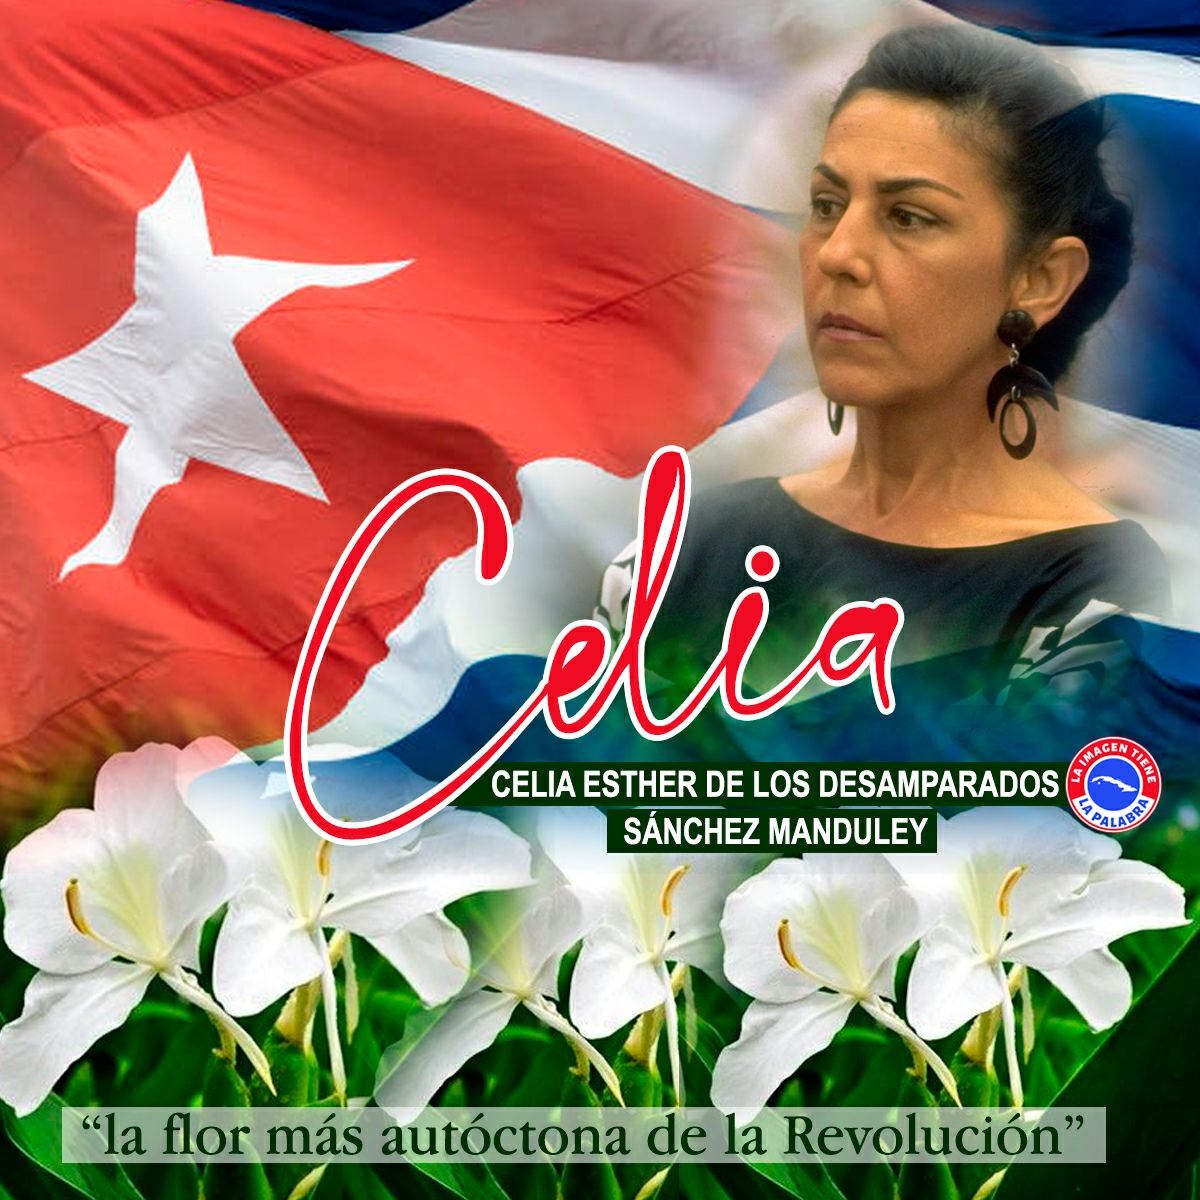 'Todo sacrificio que se haga por esta Revolución vale la pena ...' #CeliaVive en el ❤️ del pueblo #CeliaVive en la obra revolucionaria cubana ❤️🇨🇺💪 #CeliaVive hoy y siempre !!!